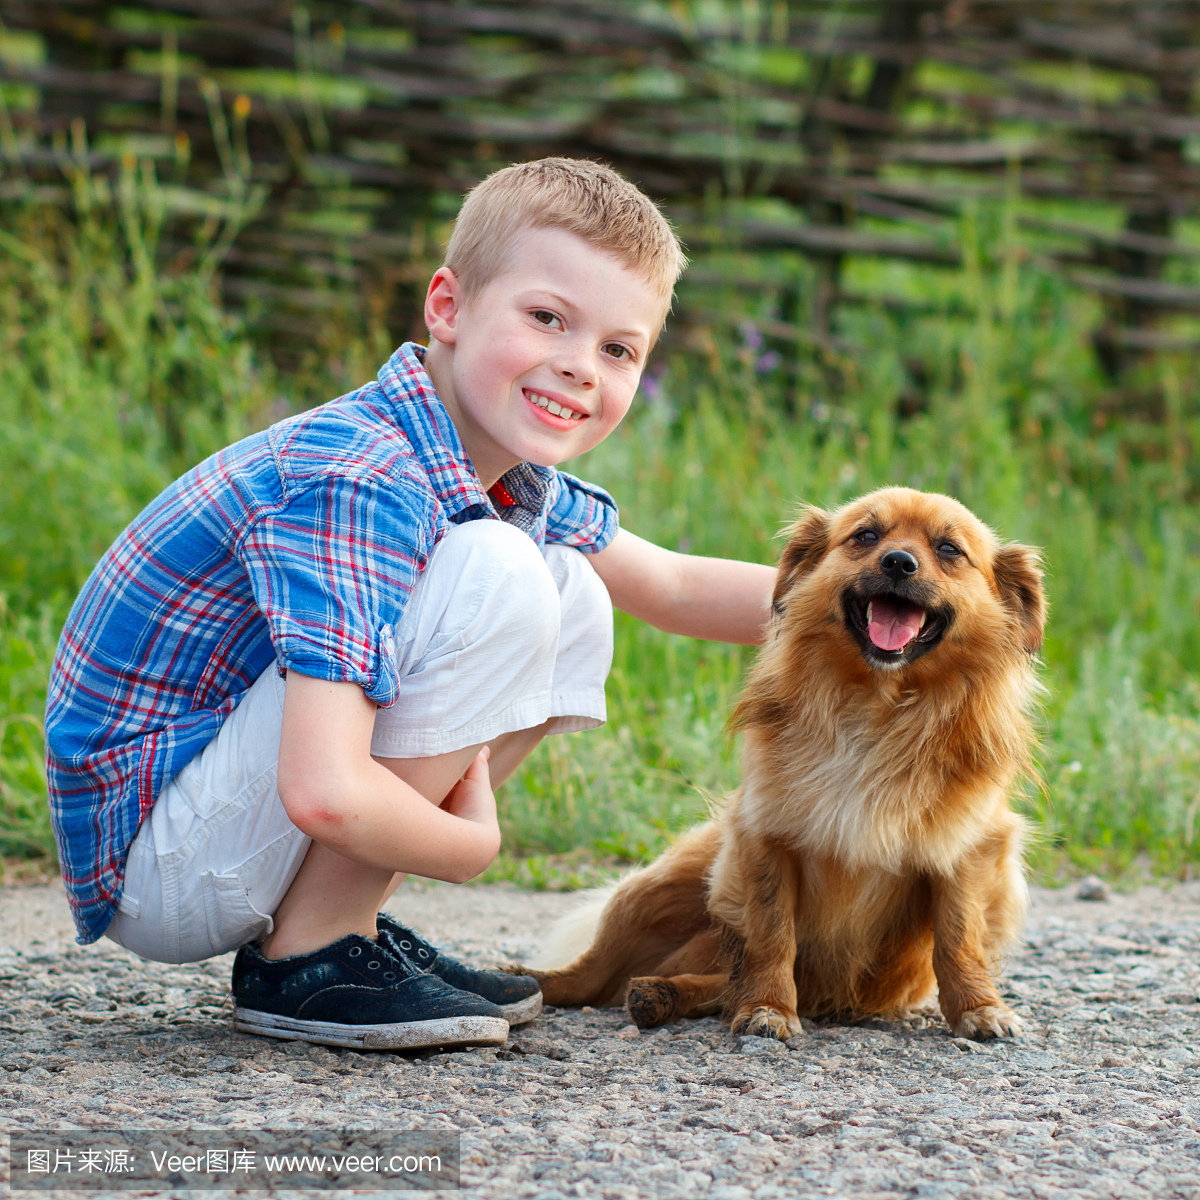 男孩穿着格子衬衫,抱着一只红色的蓬松狗。最